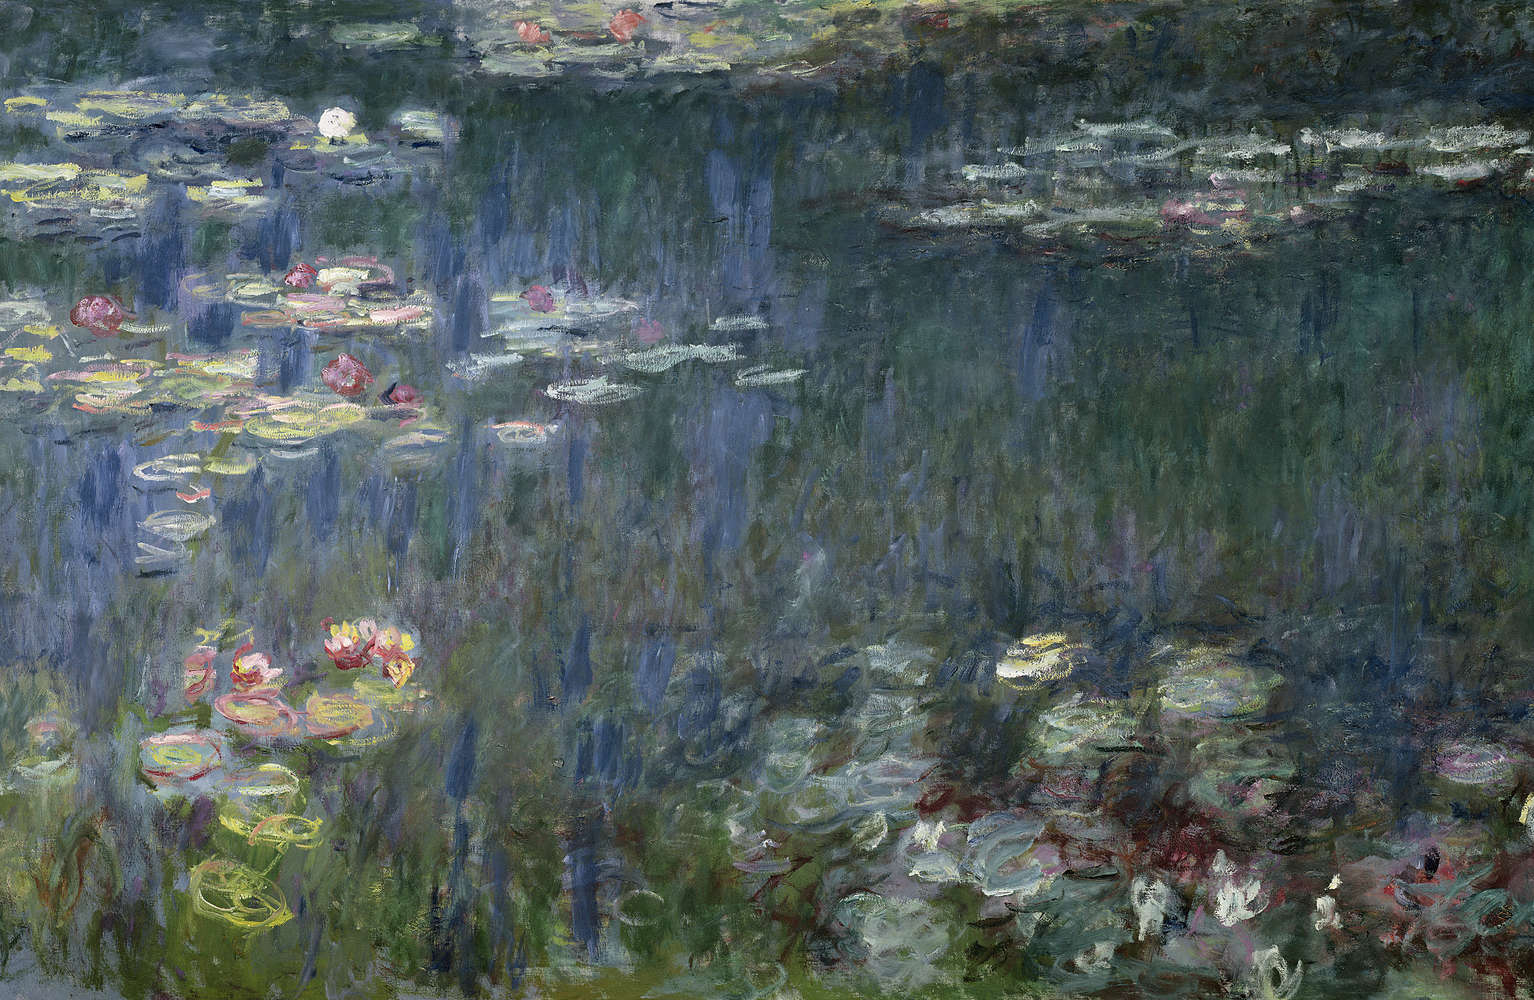             Fototapete "Seerosen: Grüne Reflektionen" von Claude Monet
        